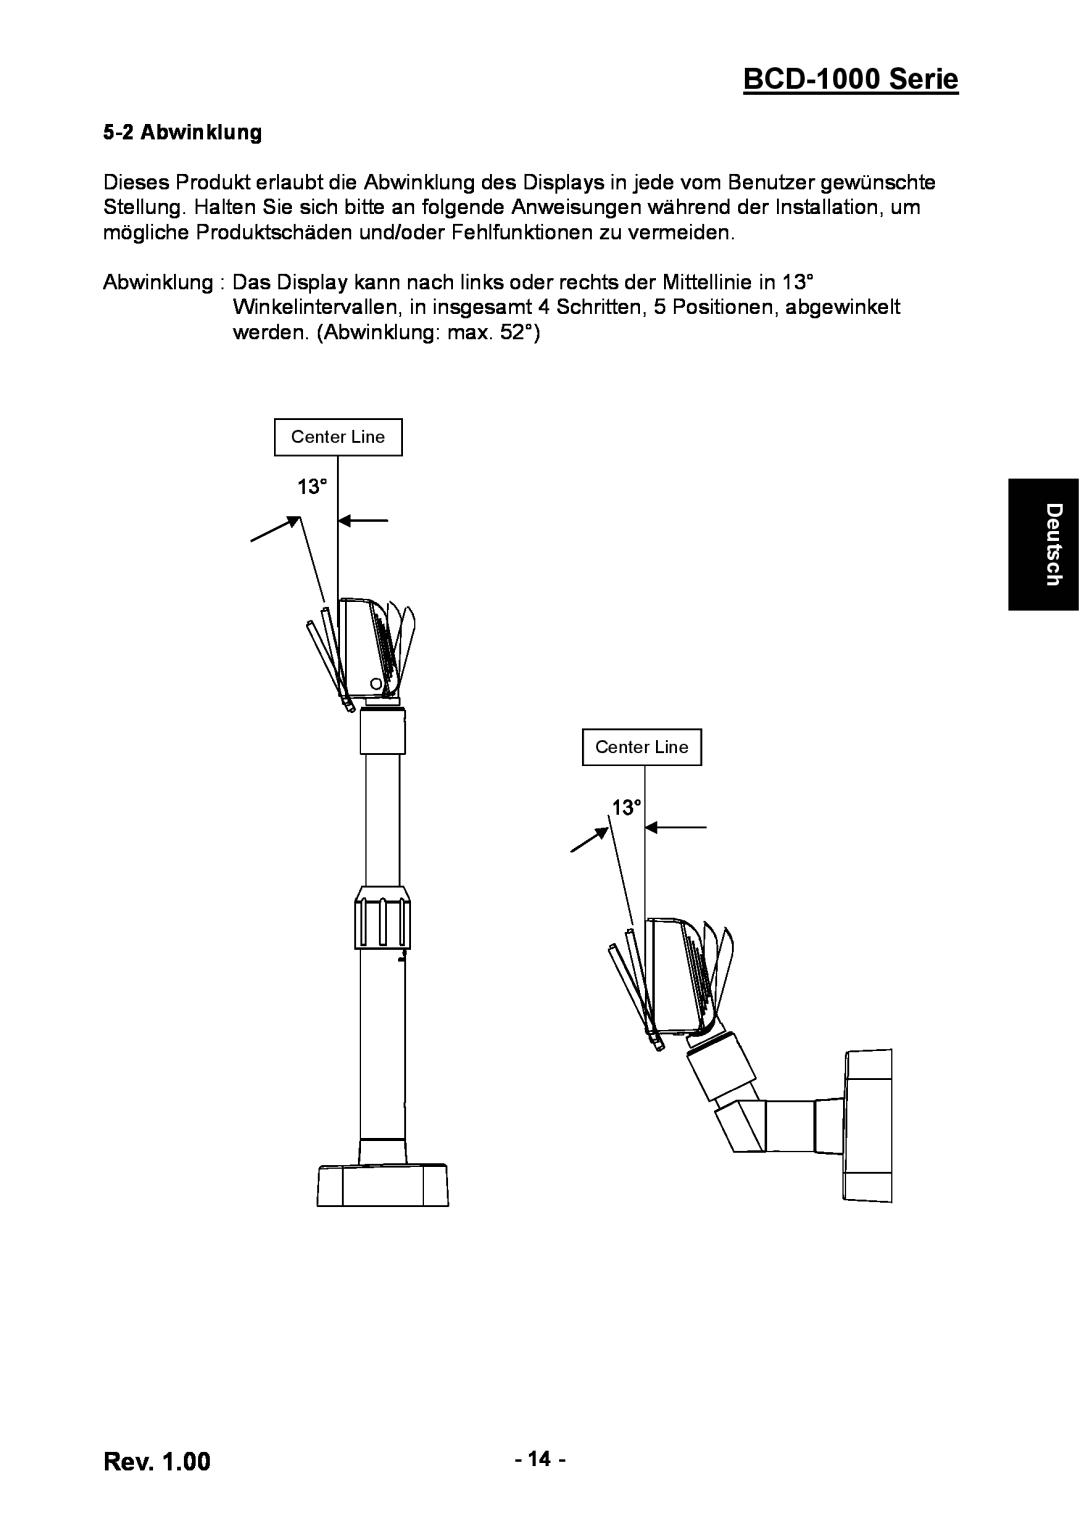 Samsung user manual Abwinklung, BCD-1000 Serie, Deutsch 